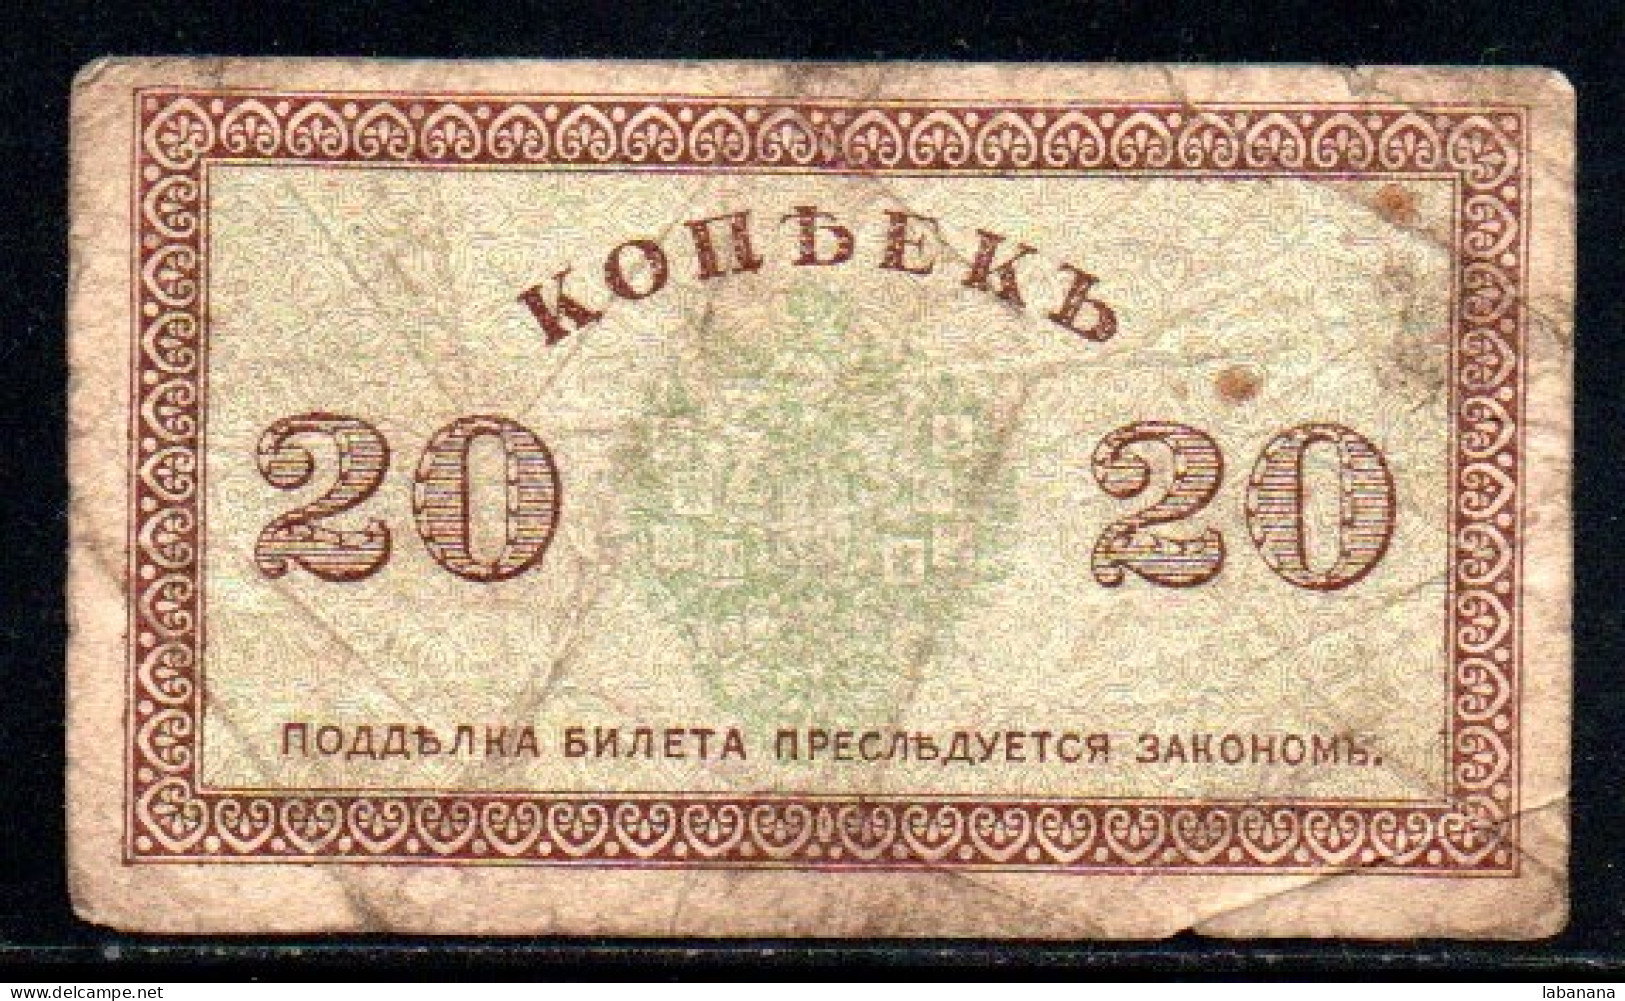 276-Russie Du Nord 20 Kopecks 1919 - Russie